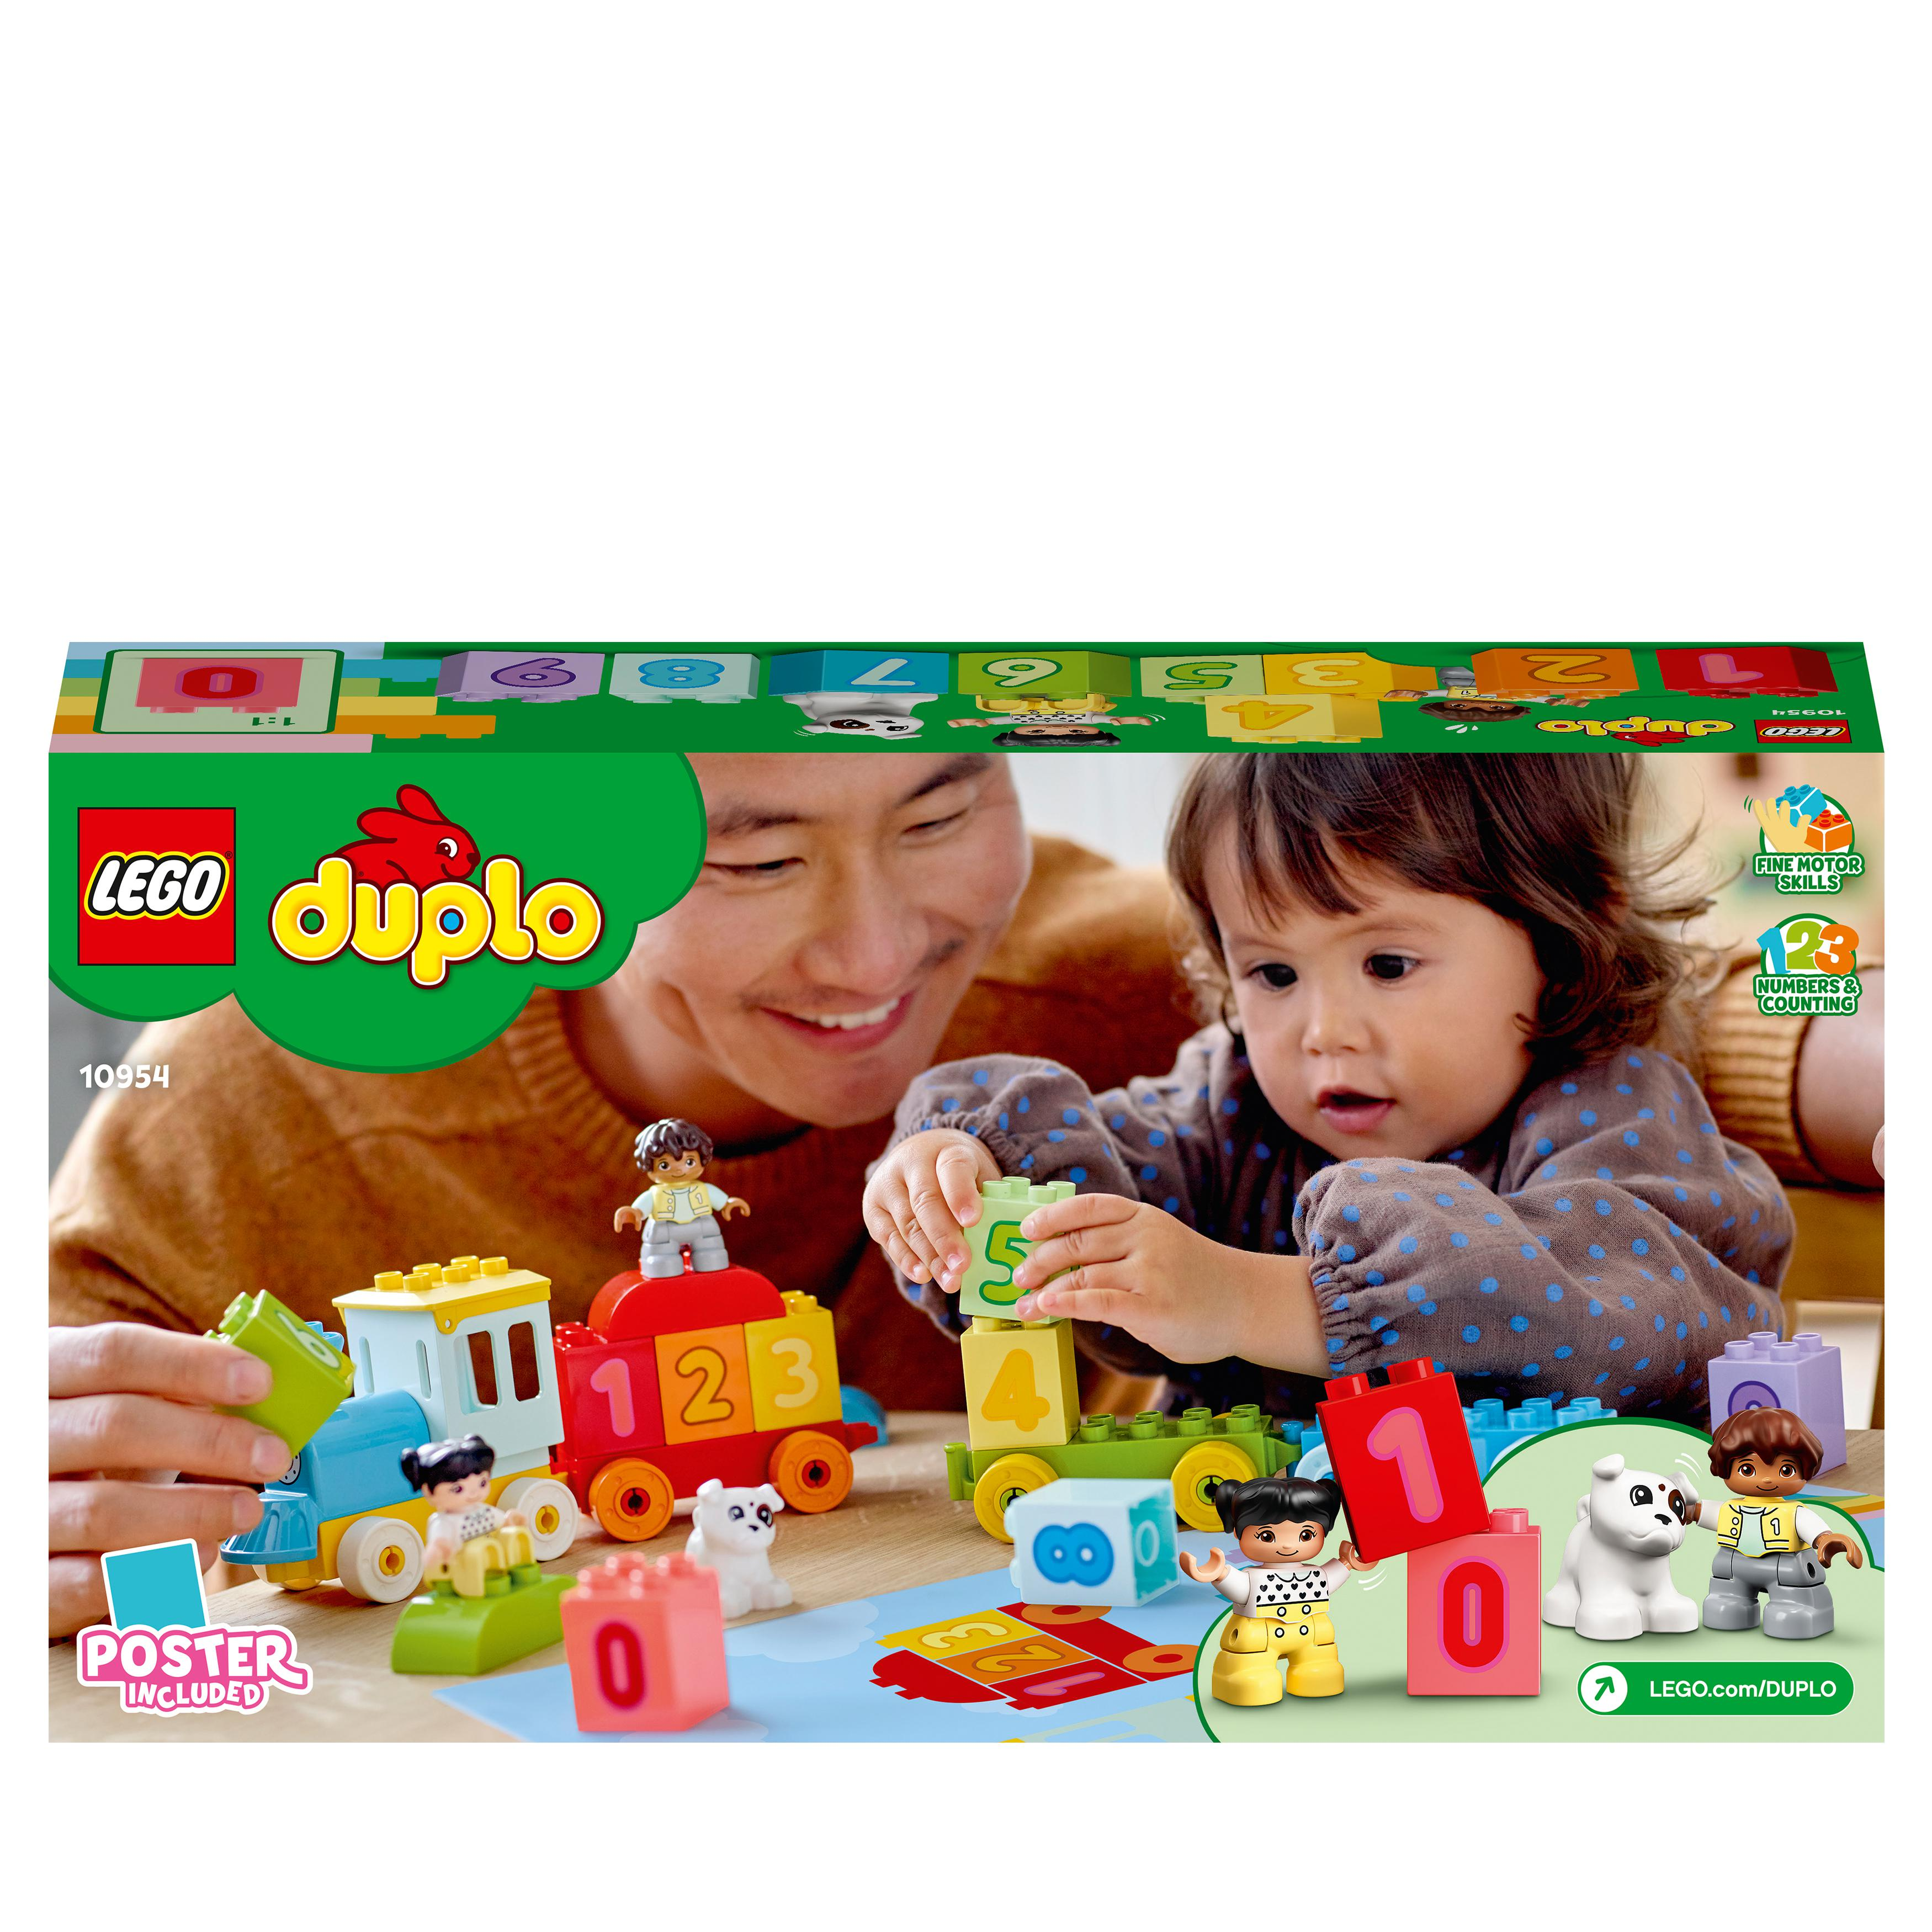 – DUPLO Zahlenzug 10954 Mehrfarbig lernen LEGO Bausatz, Zählen